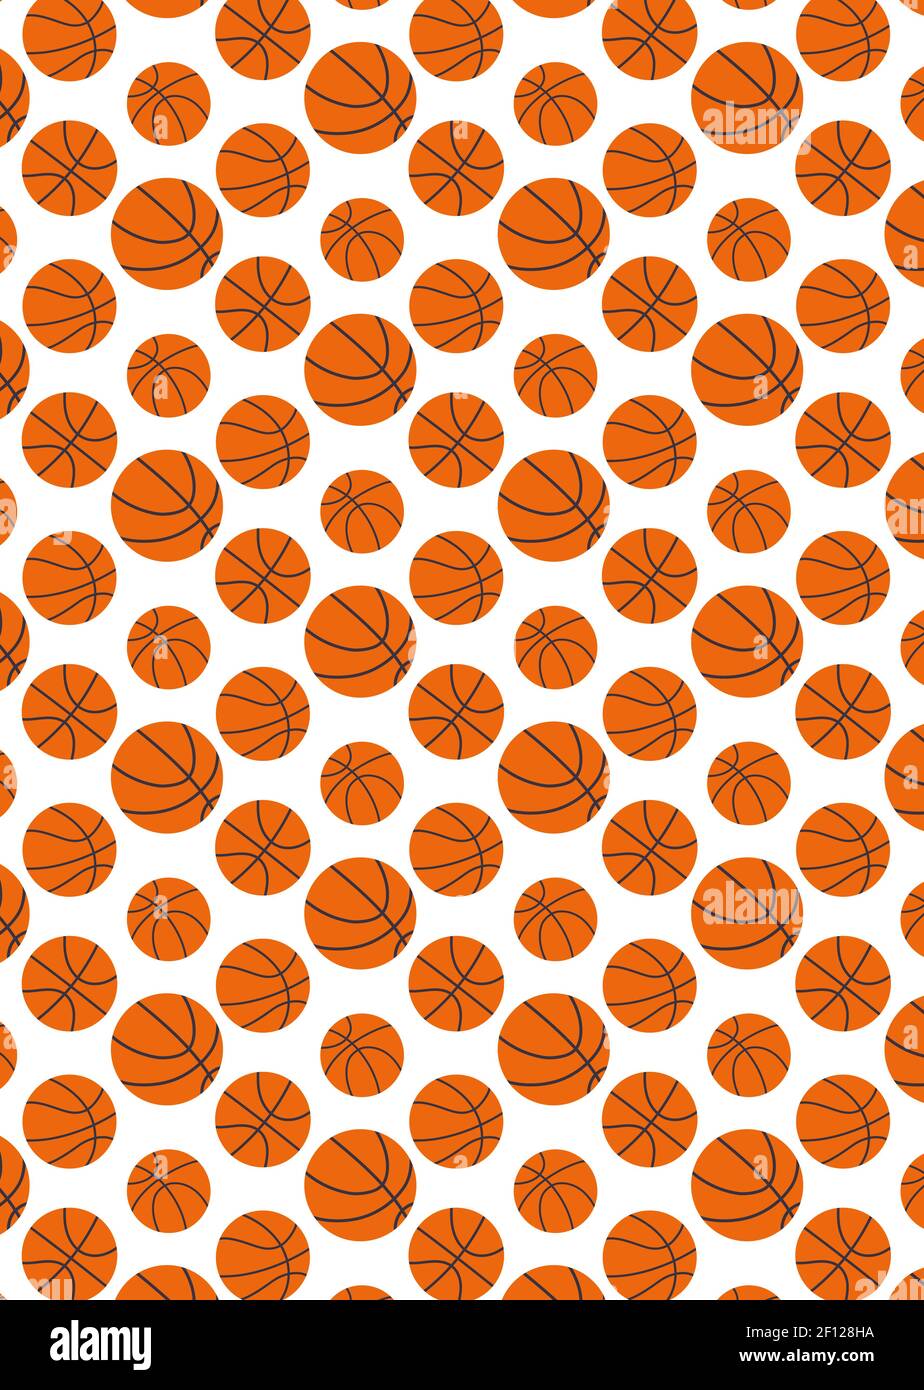 Vektor nahtloses Muster von Basketbällen. Hintergrund in flachem Stil, orange auf weiß Stock Vektor